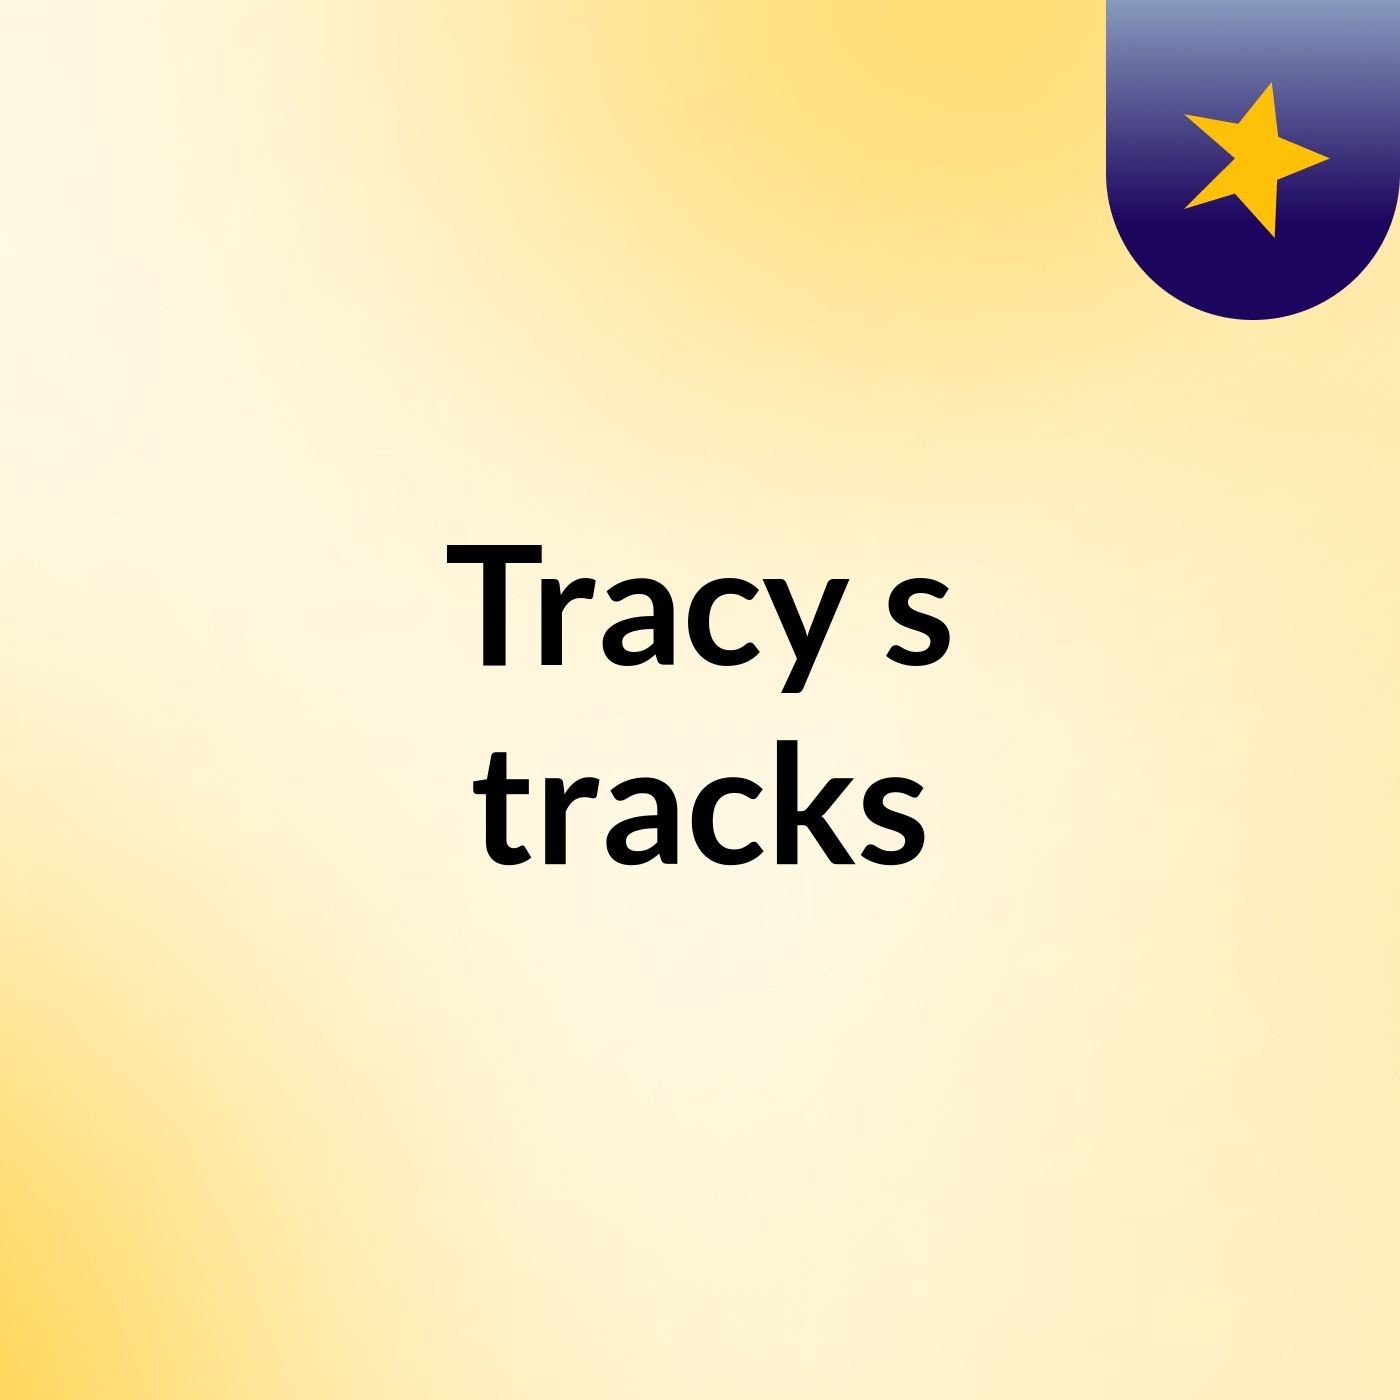 Tracy's tracks